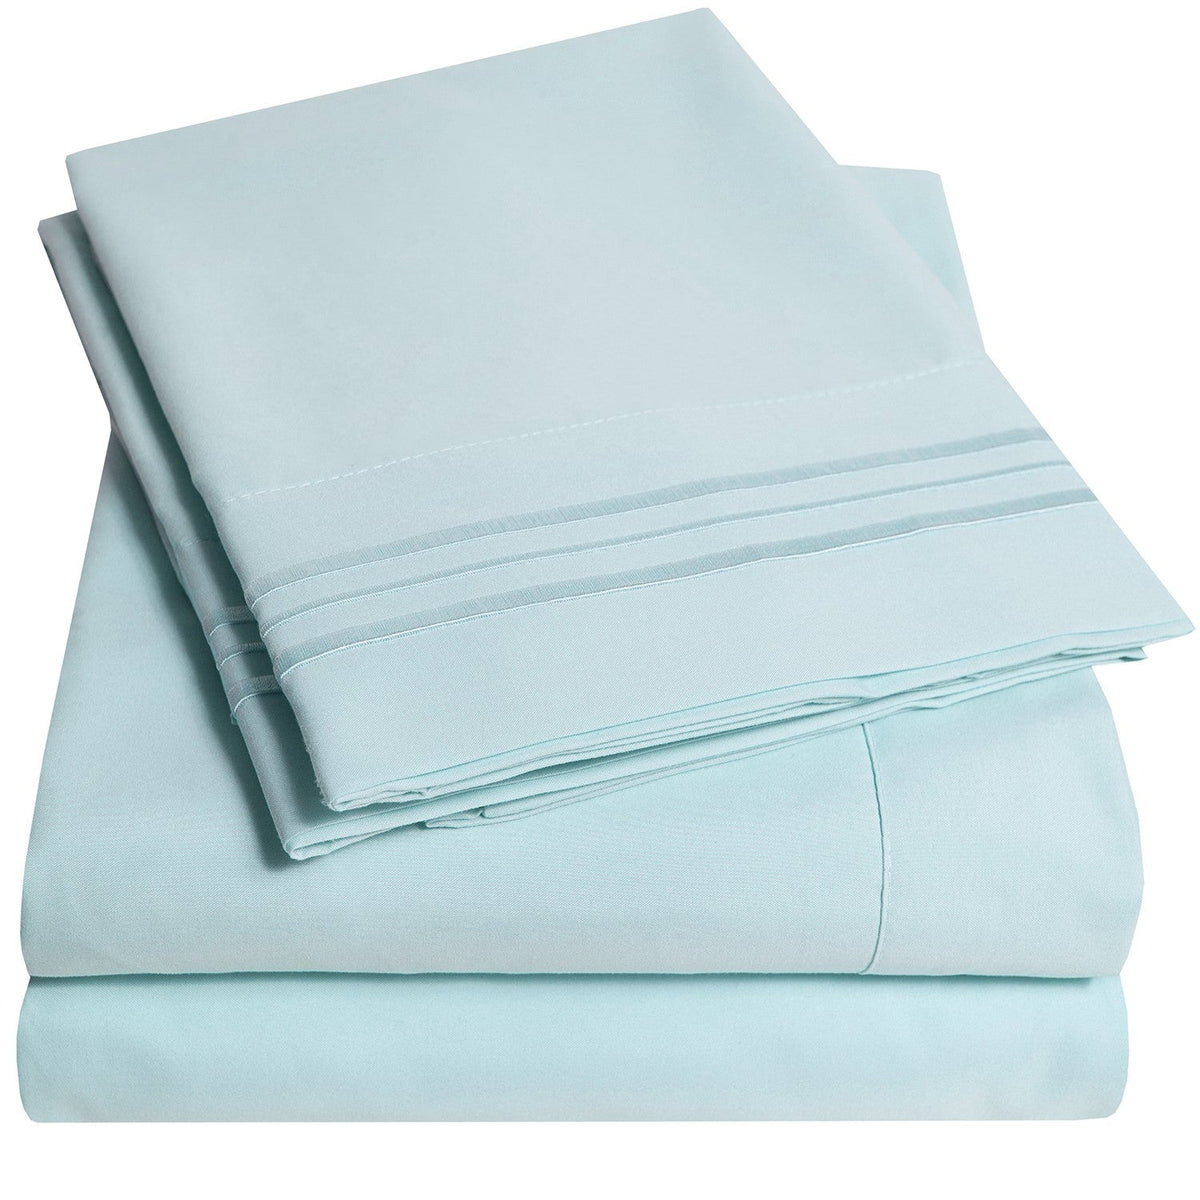 Classic 4-Piece Bed Sheet Set (Aqua) - Folded